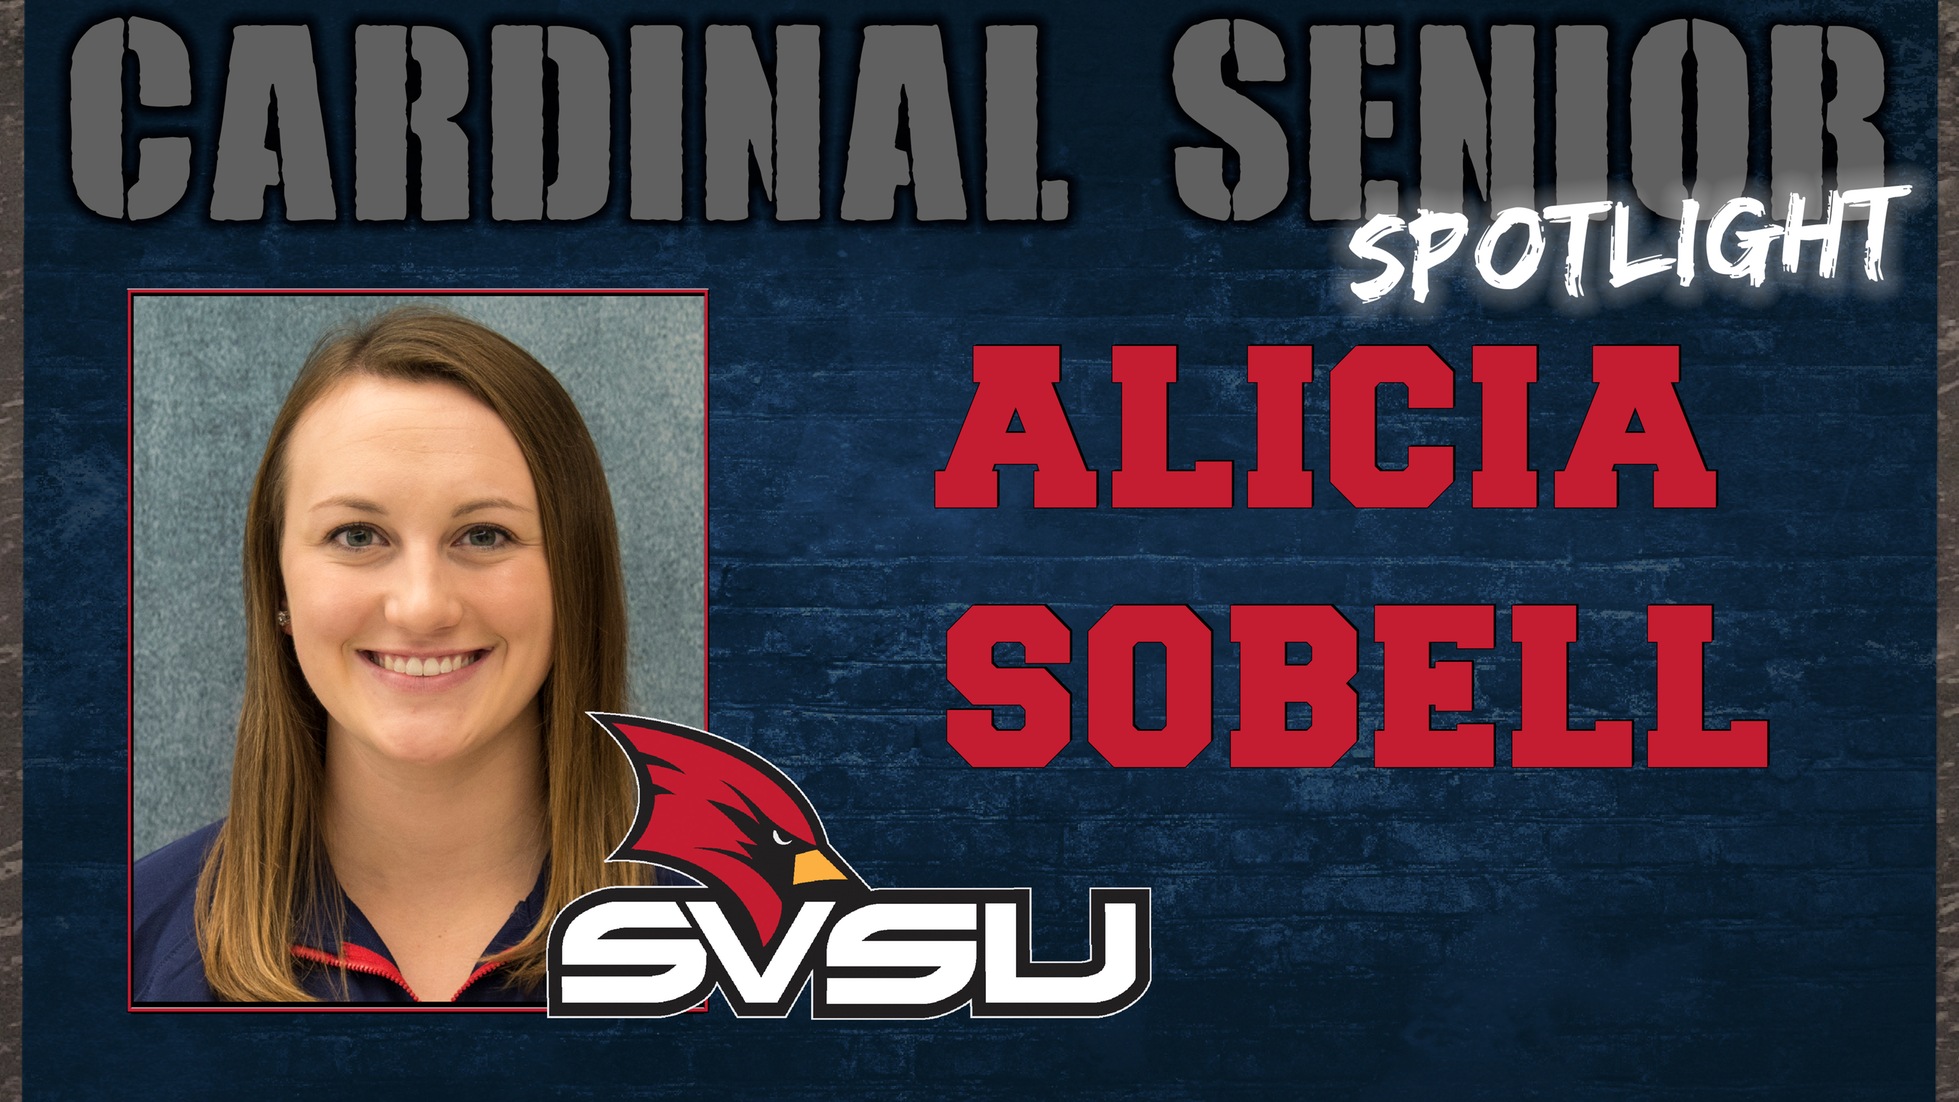 SVSU Cardinal Senior Spotlight - Alicia Sobell